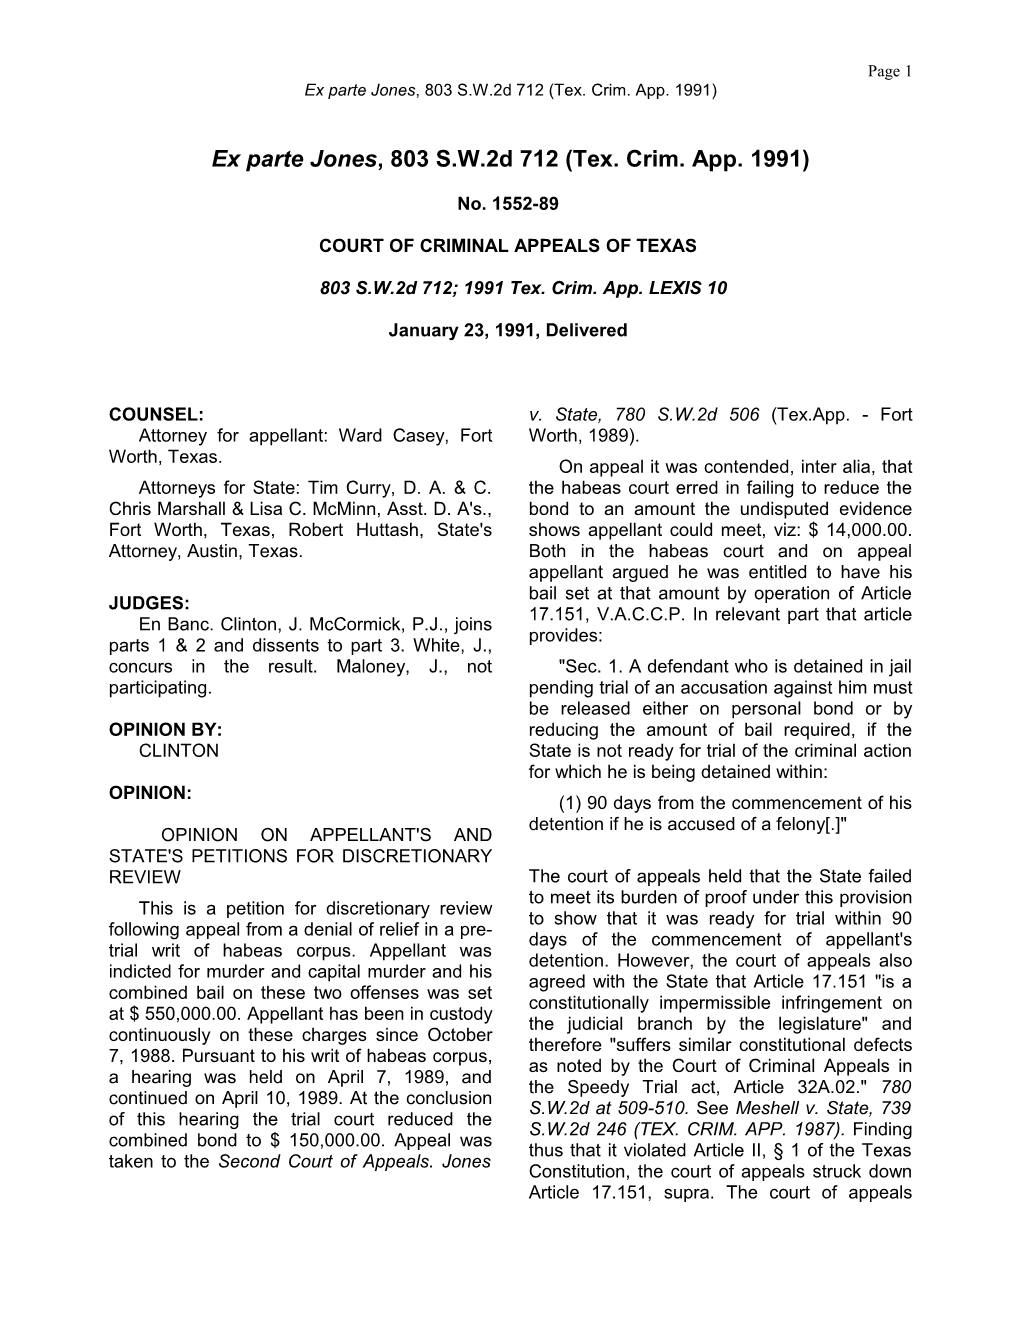 Ex Parte Jones, 803 S.W.2D 712 (Tex. Crim. App. 1991)